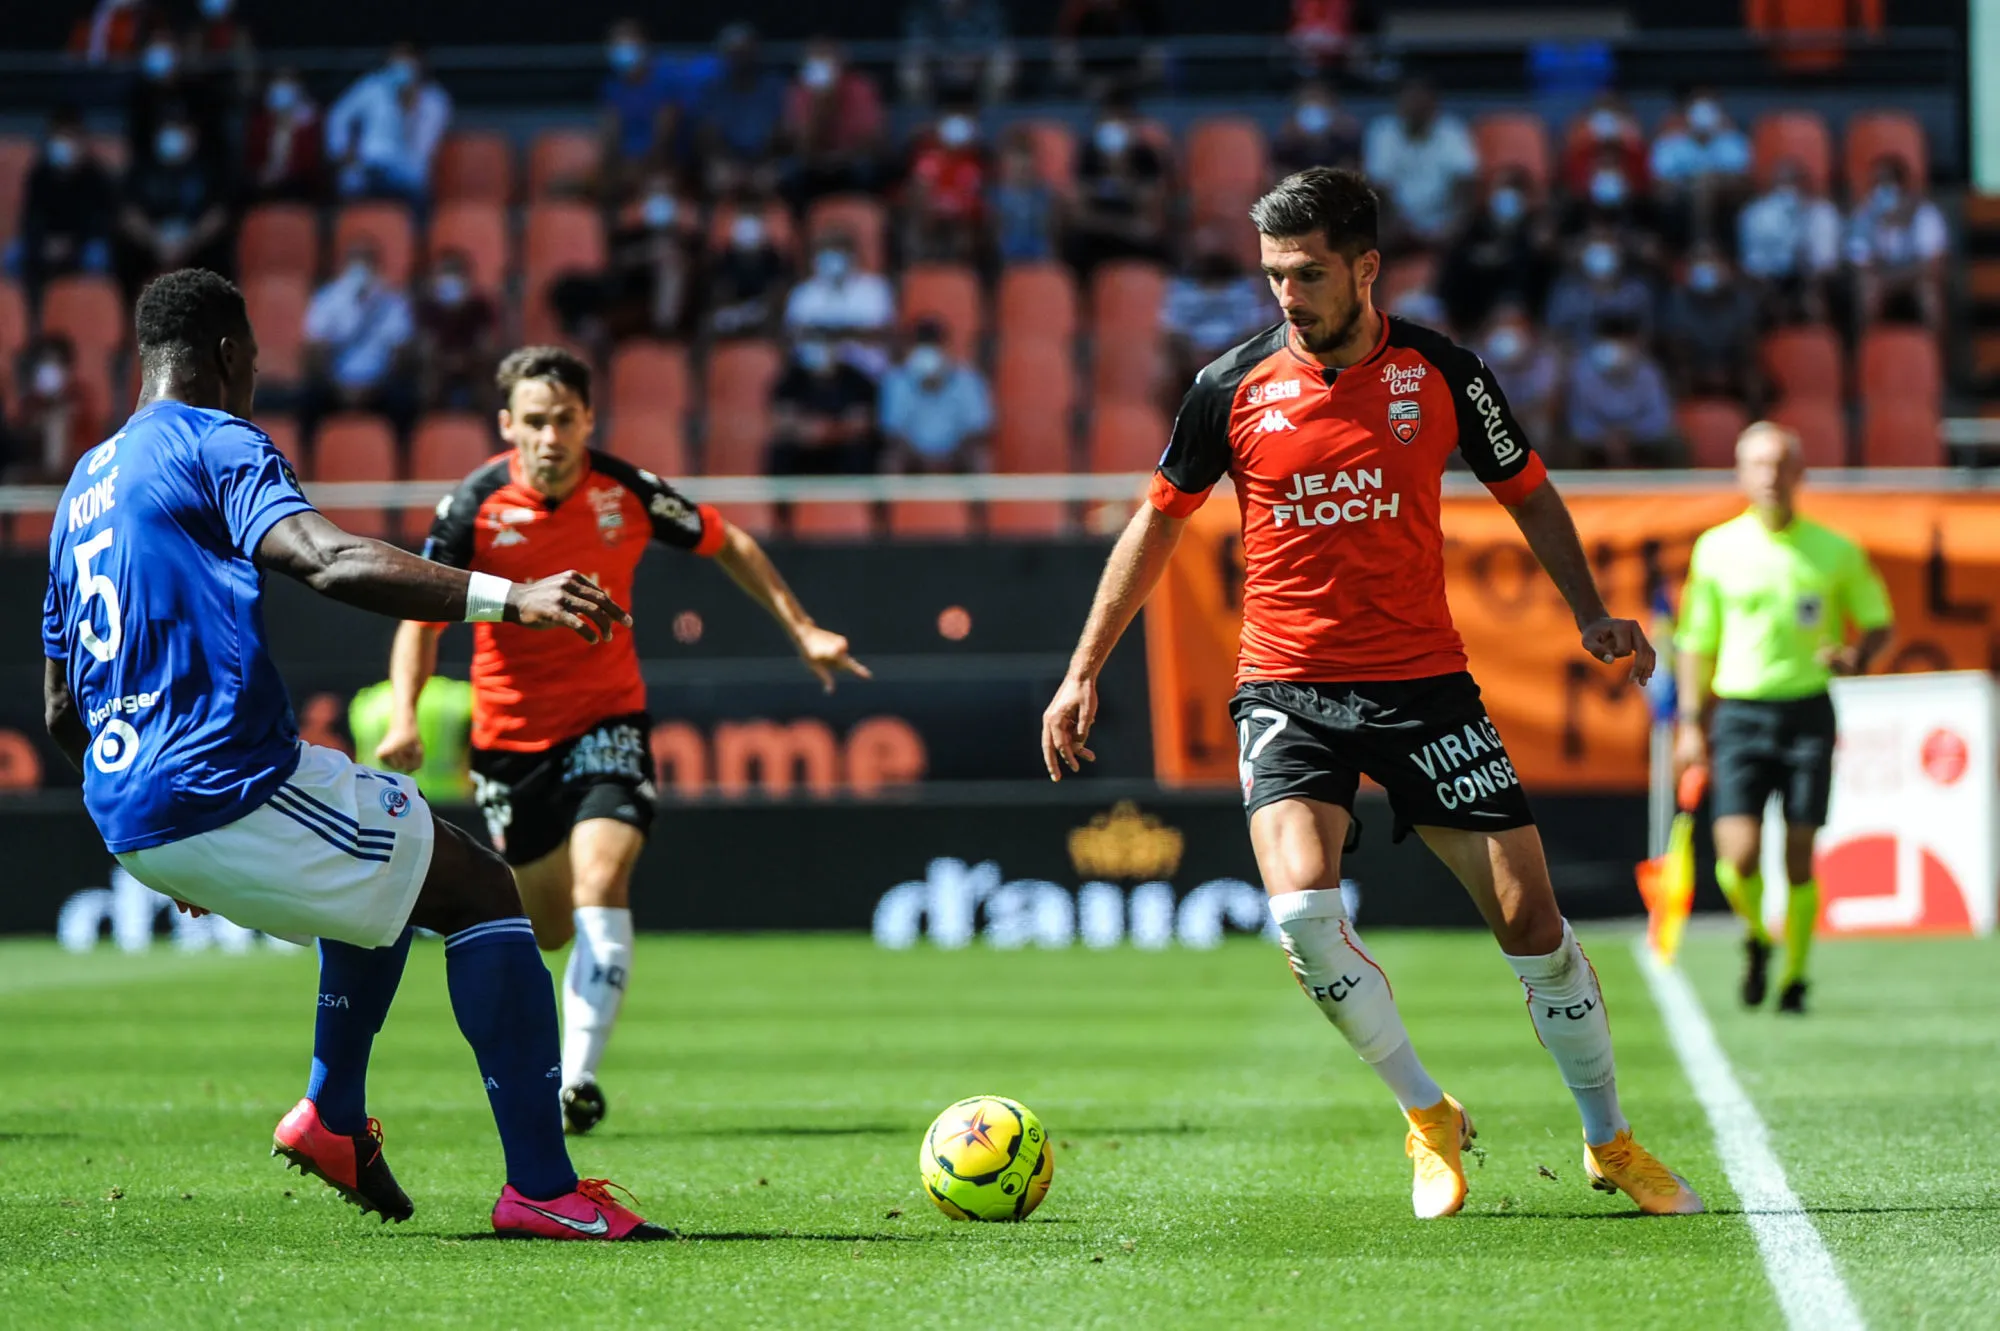 Pronostic Lorient Nîmes : Analyse, cotes et prono du match de Ligue 1